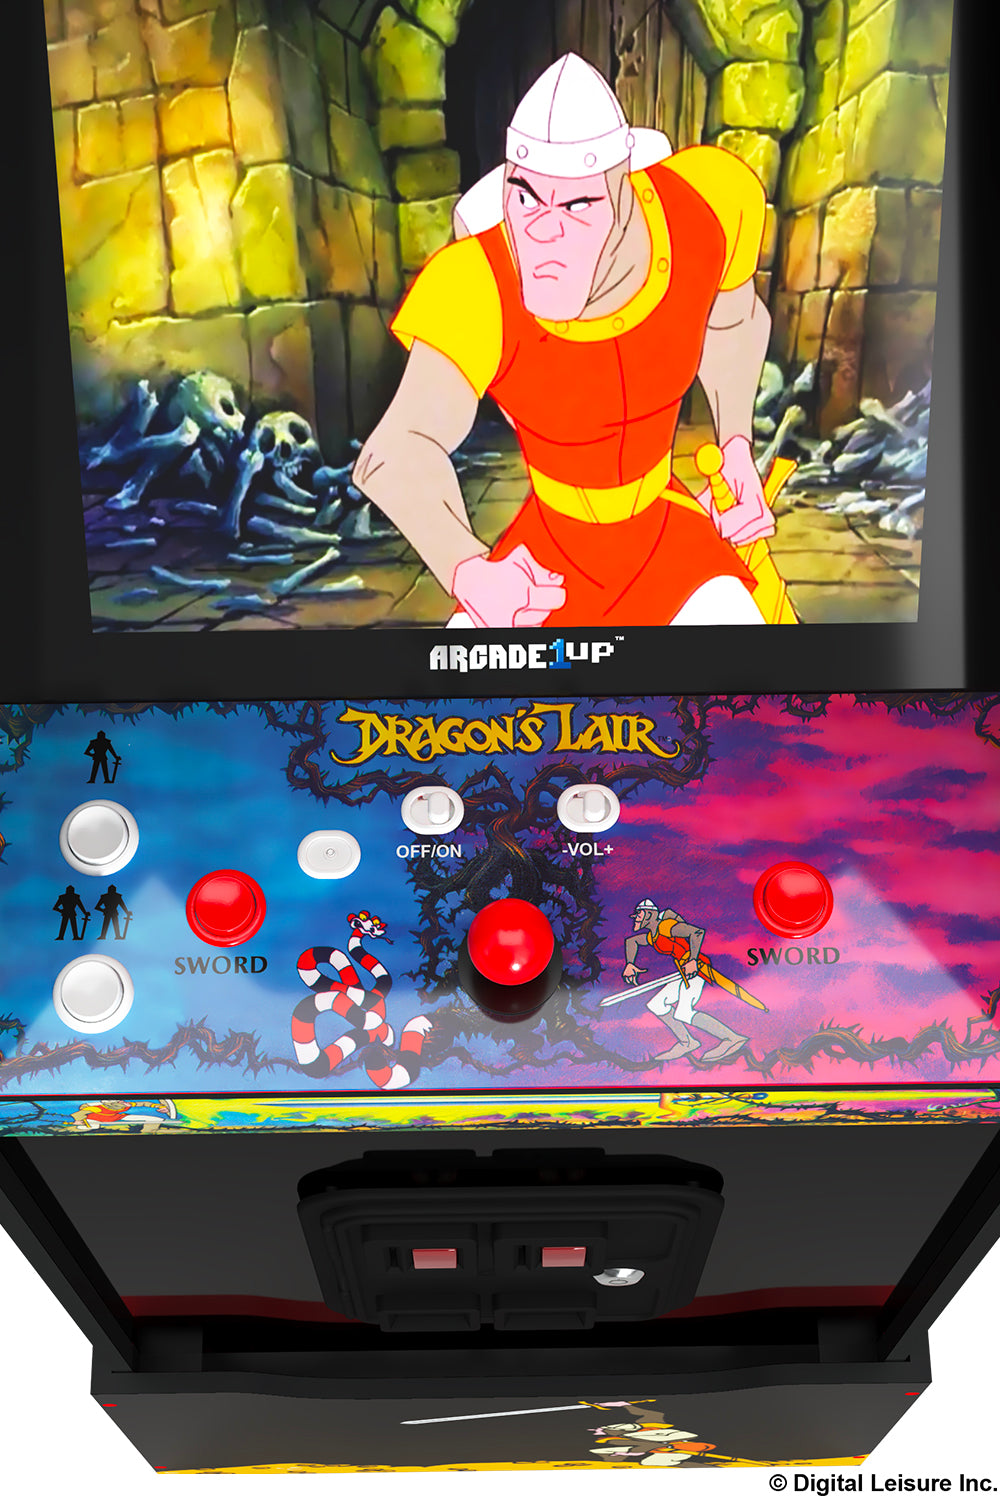 Dragon’s Lair Arcade Machine